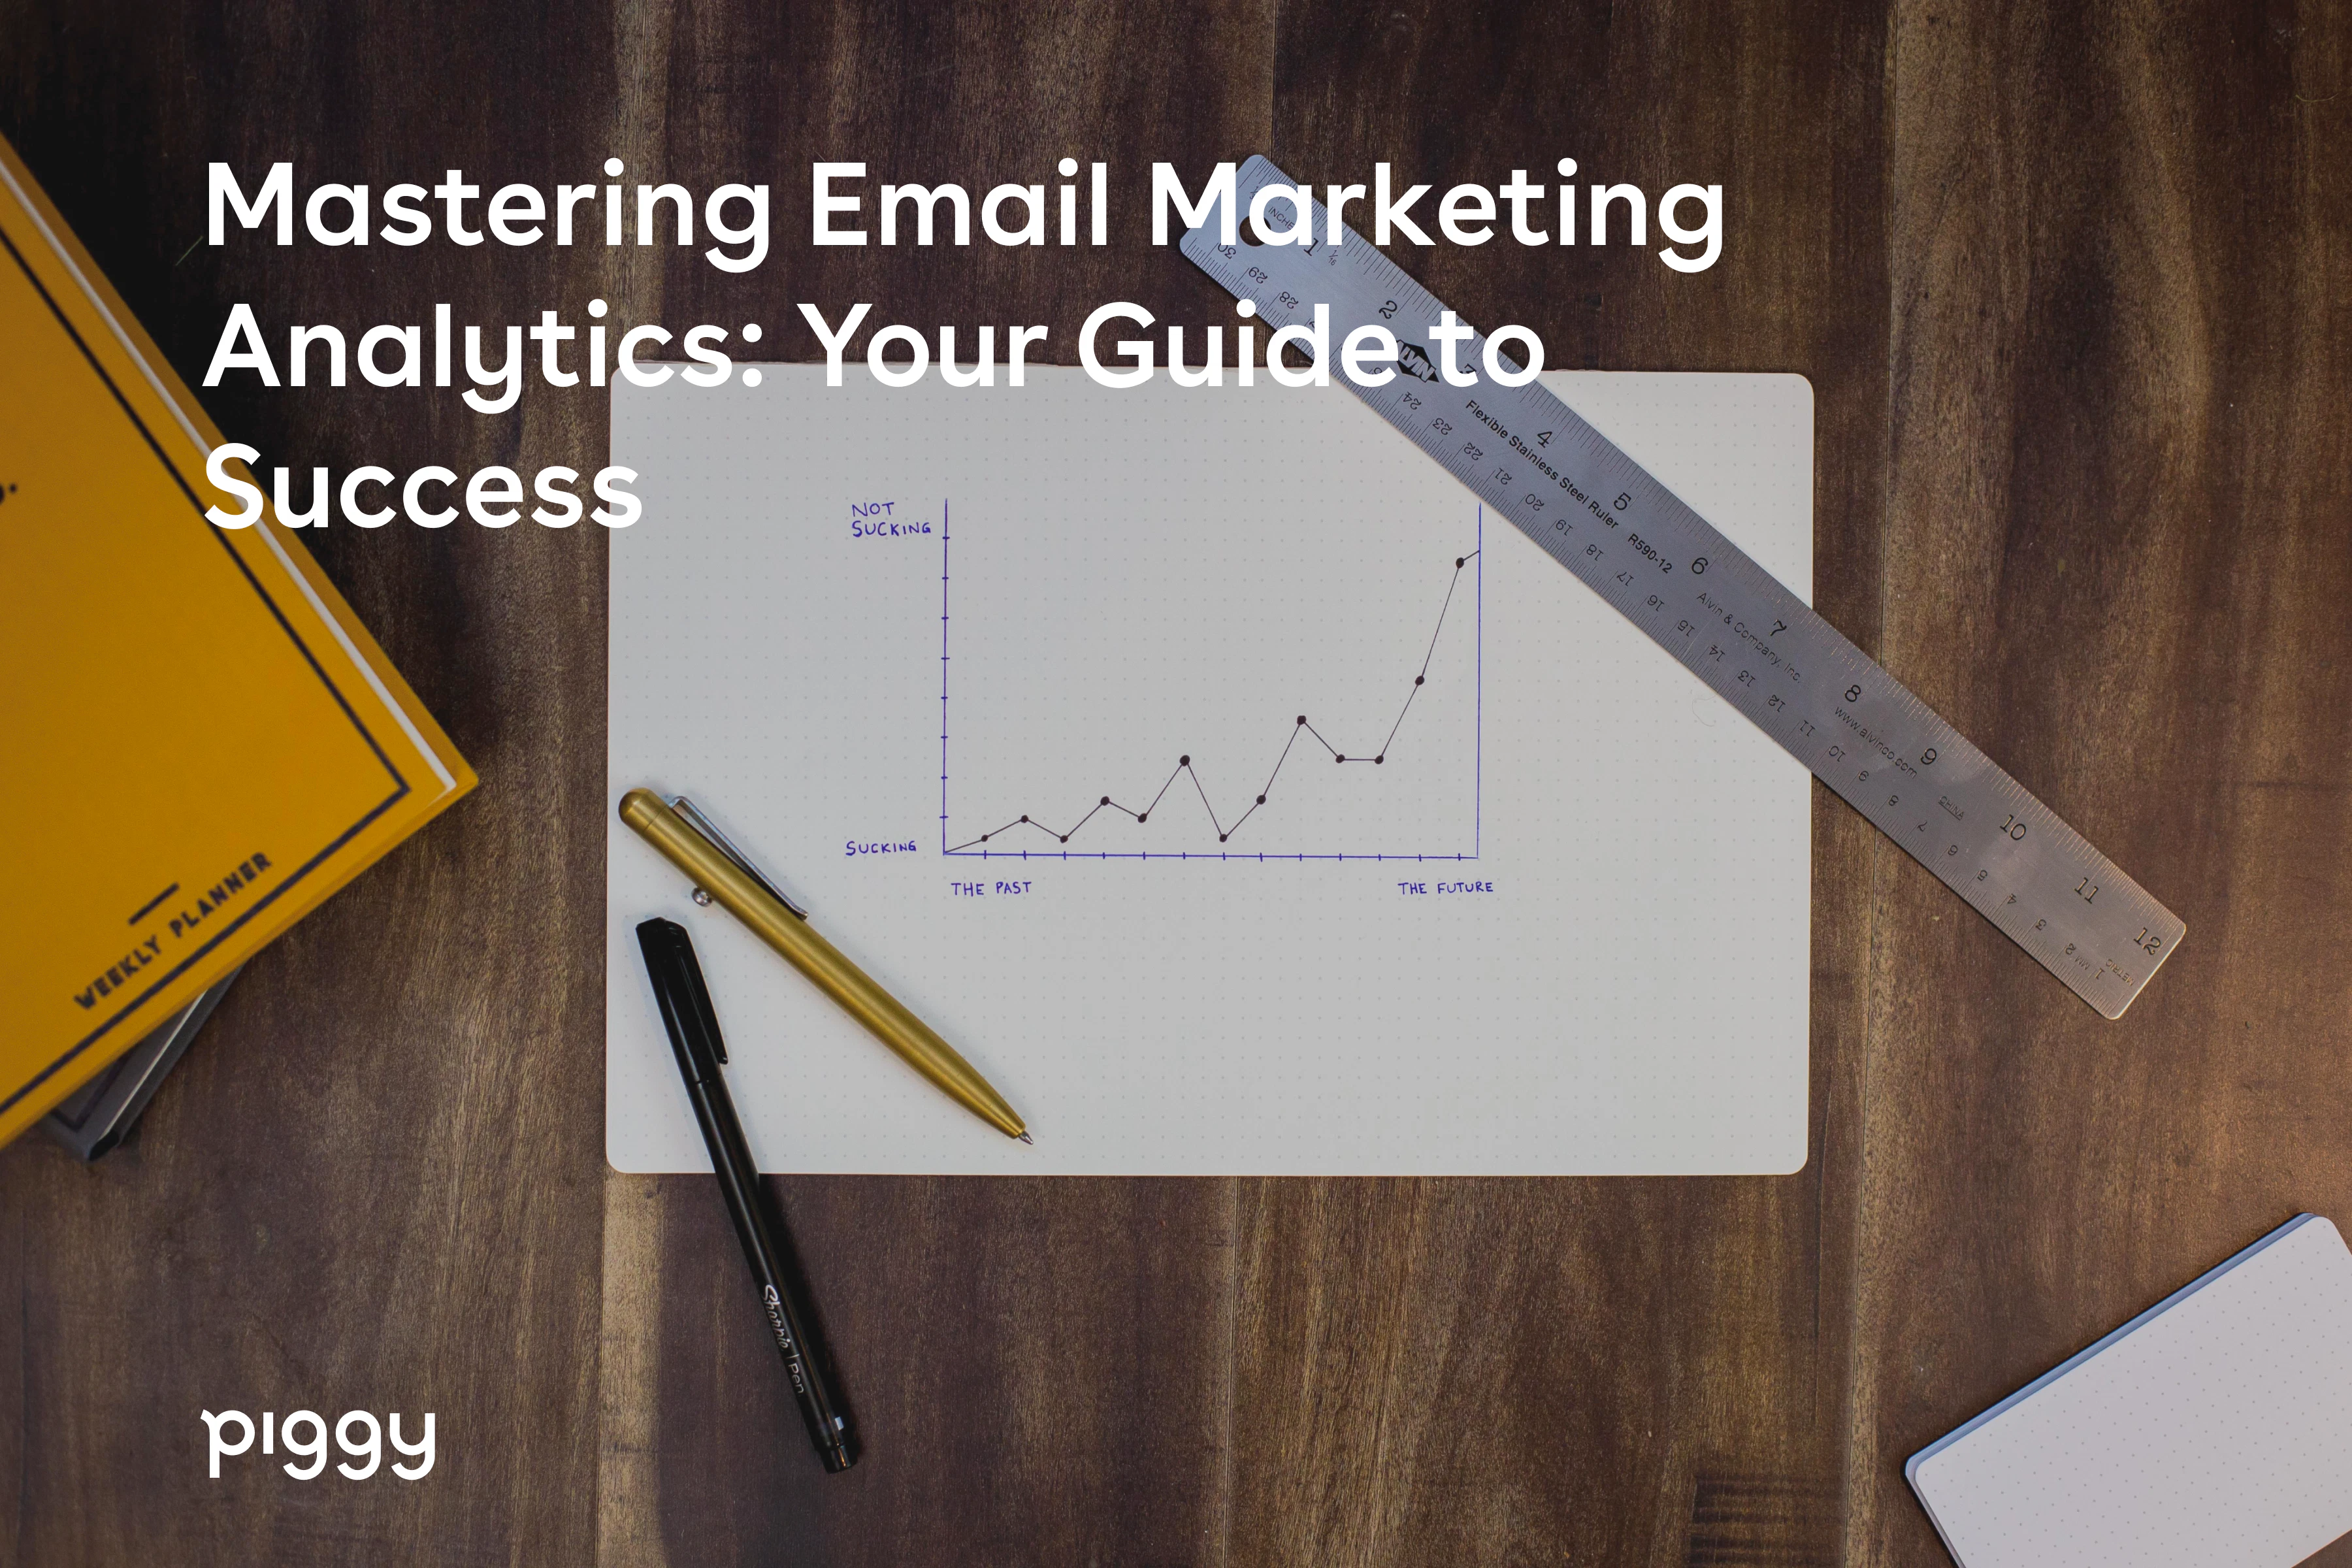 email marketing analytics